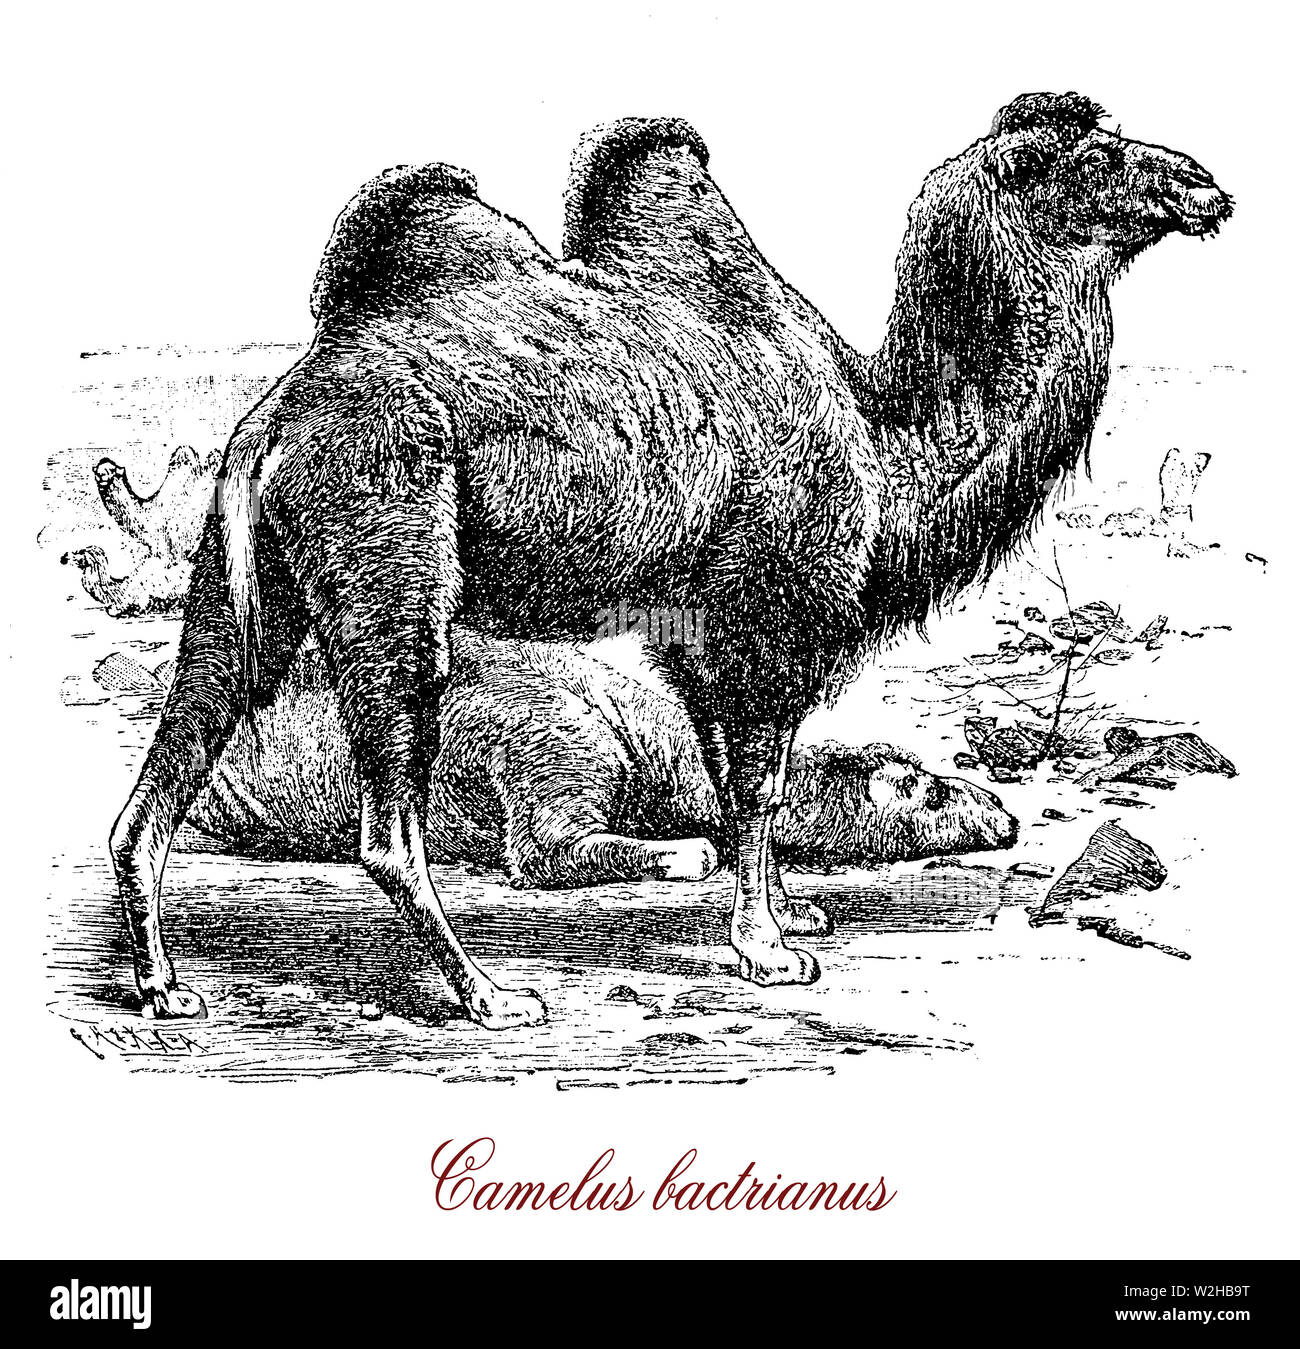 Il cammello Bactrian (Camelus bactrianus) è un grande anche-toed ungulato nativa per le steppe dell'Asia centrale. Il cammello Bactrian presenta due gobbe sul suo dorso e dall'antichità serve come pacco addomesticati animali. Foto Stock